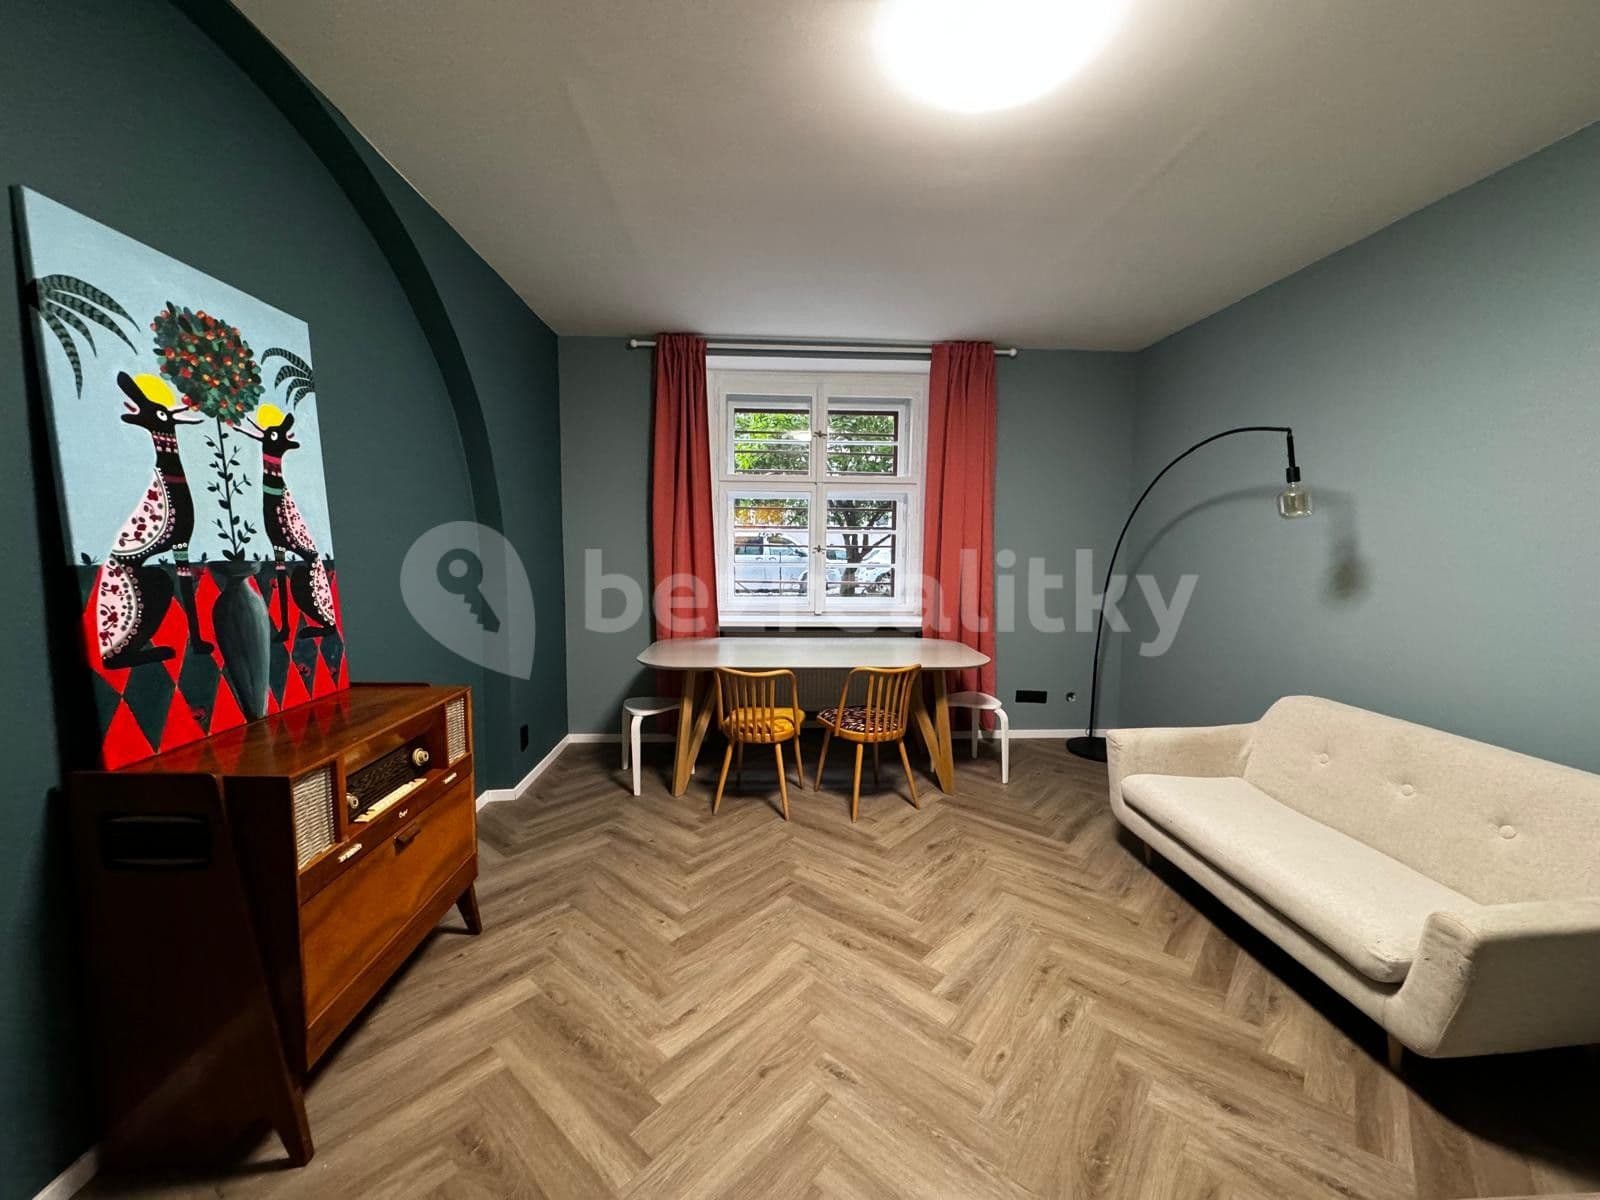 3 bedroom flat to rent, 15 m², Bulharská, Prague, Prague